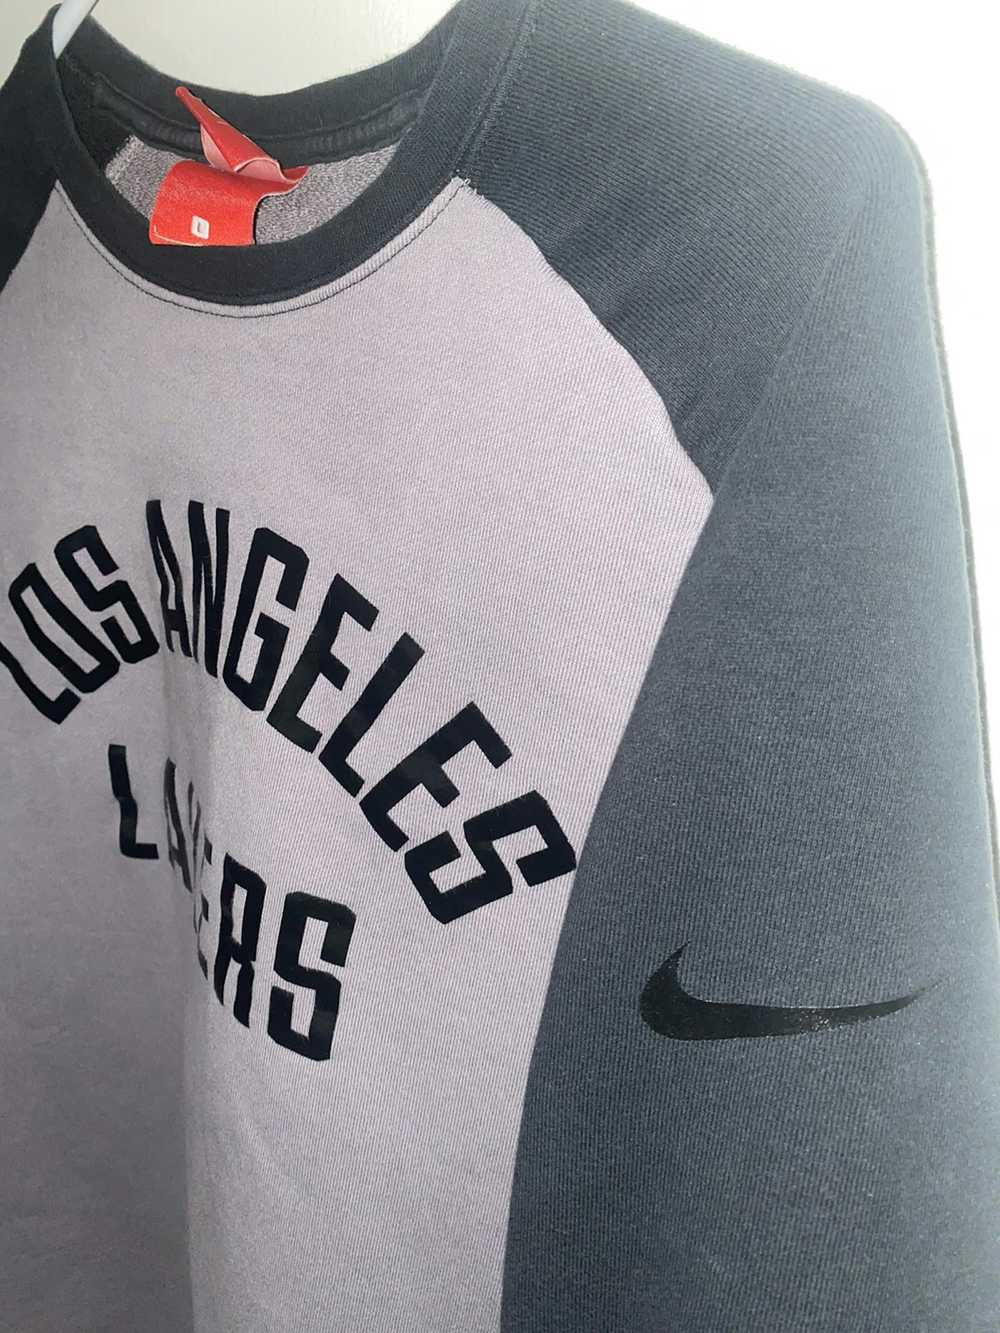 NBA × Nike L.A. Lakers - image 4